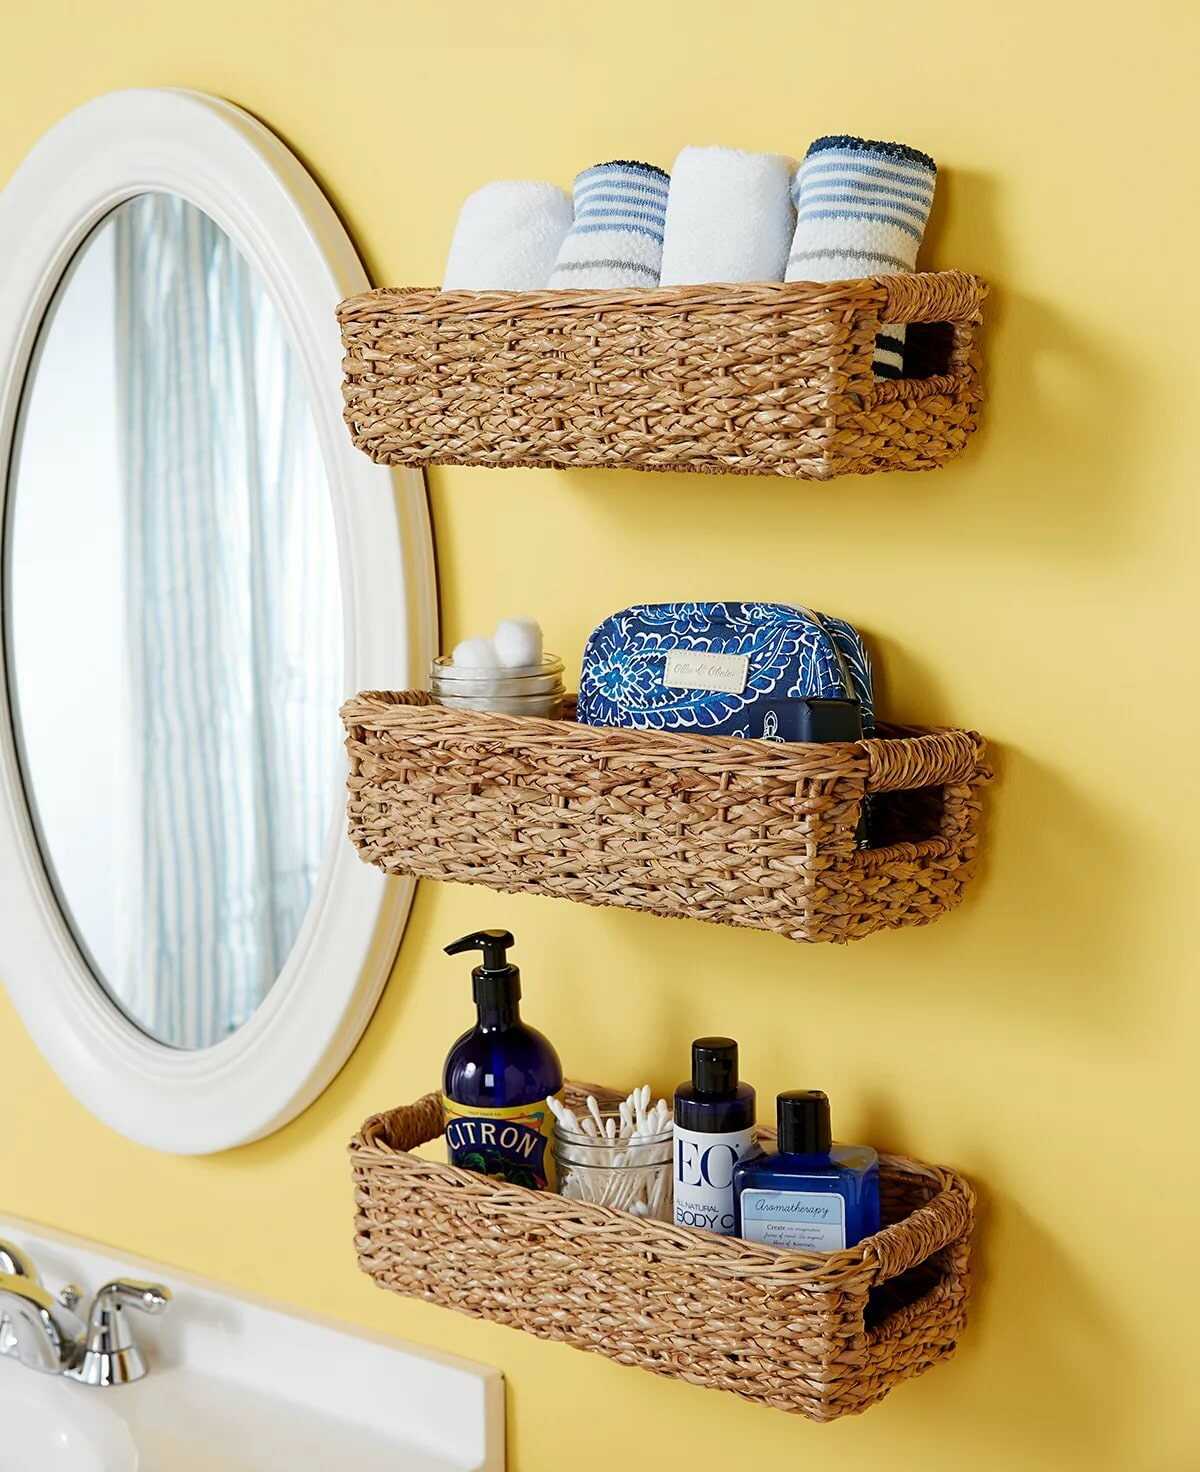 Порядок в ванной комнате: 15 интересных способов его поддерживать - статьи - small spaces - homemania